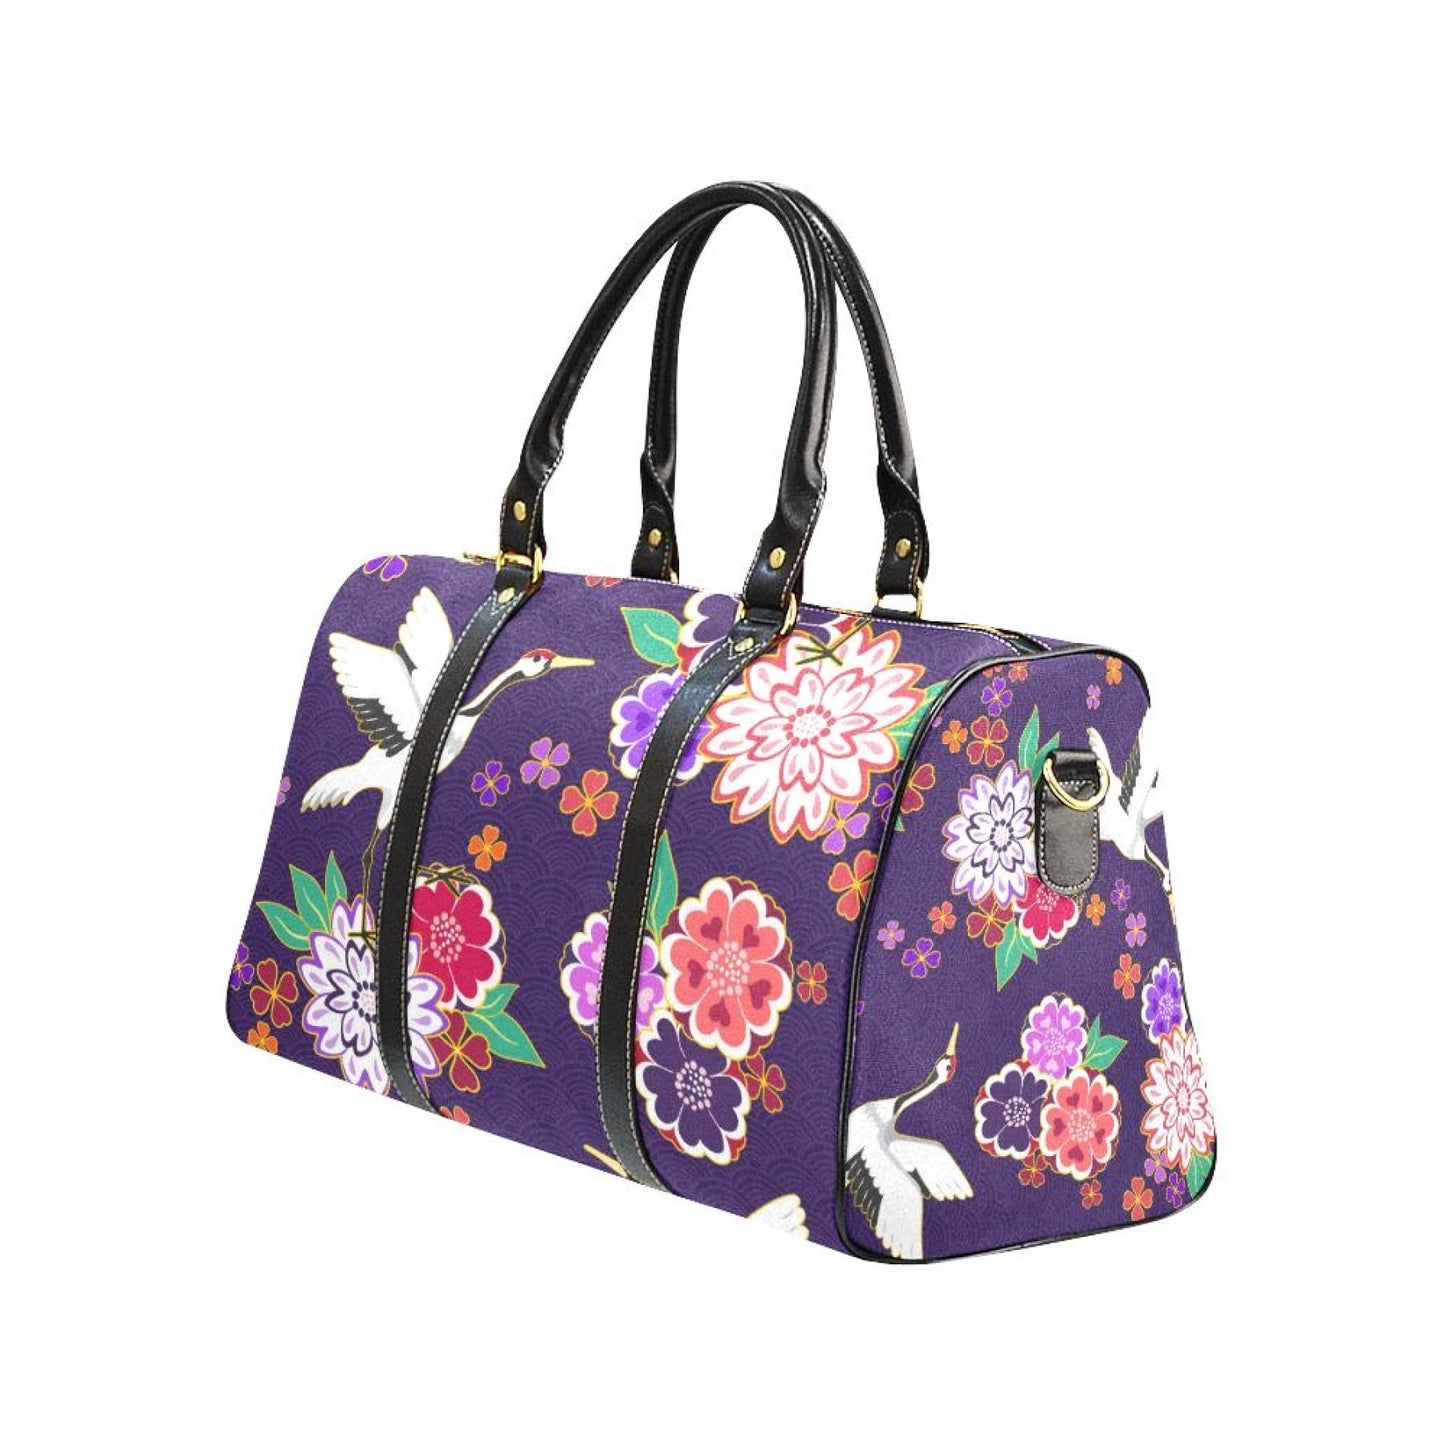 Uniquely You Travel Bag, Purple Floral Double Handle Carry-Bag Handbags